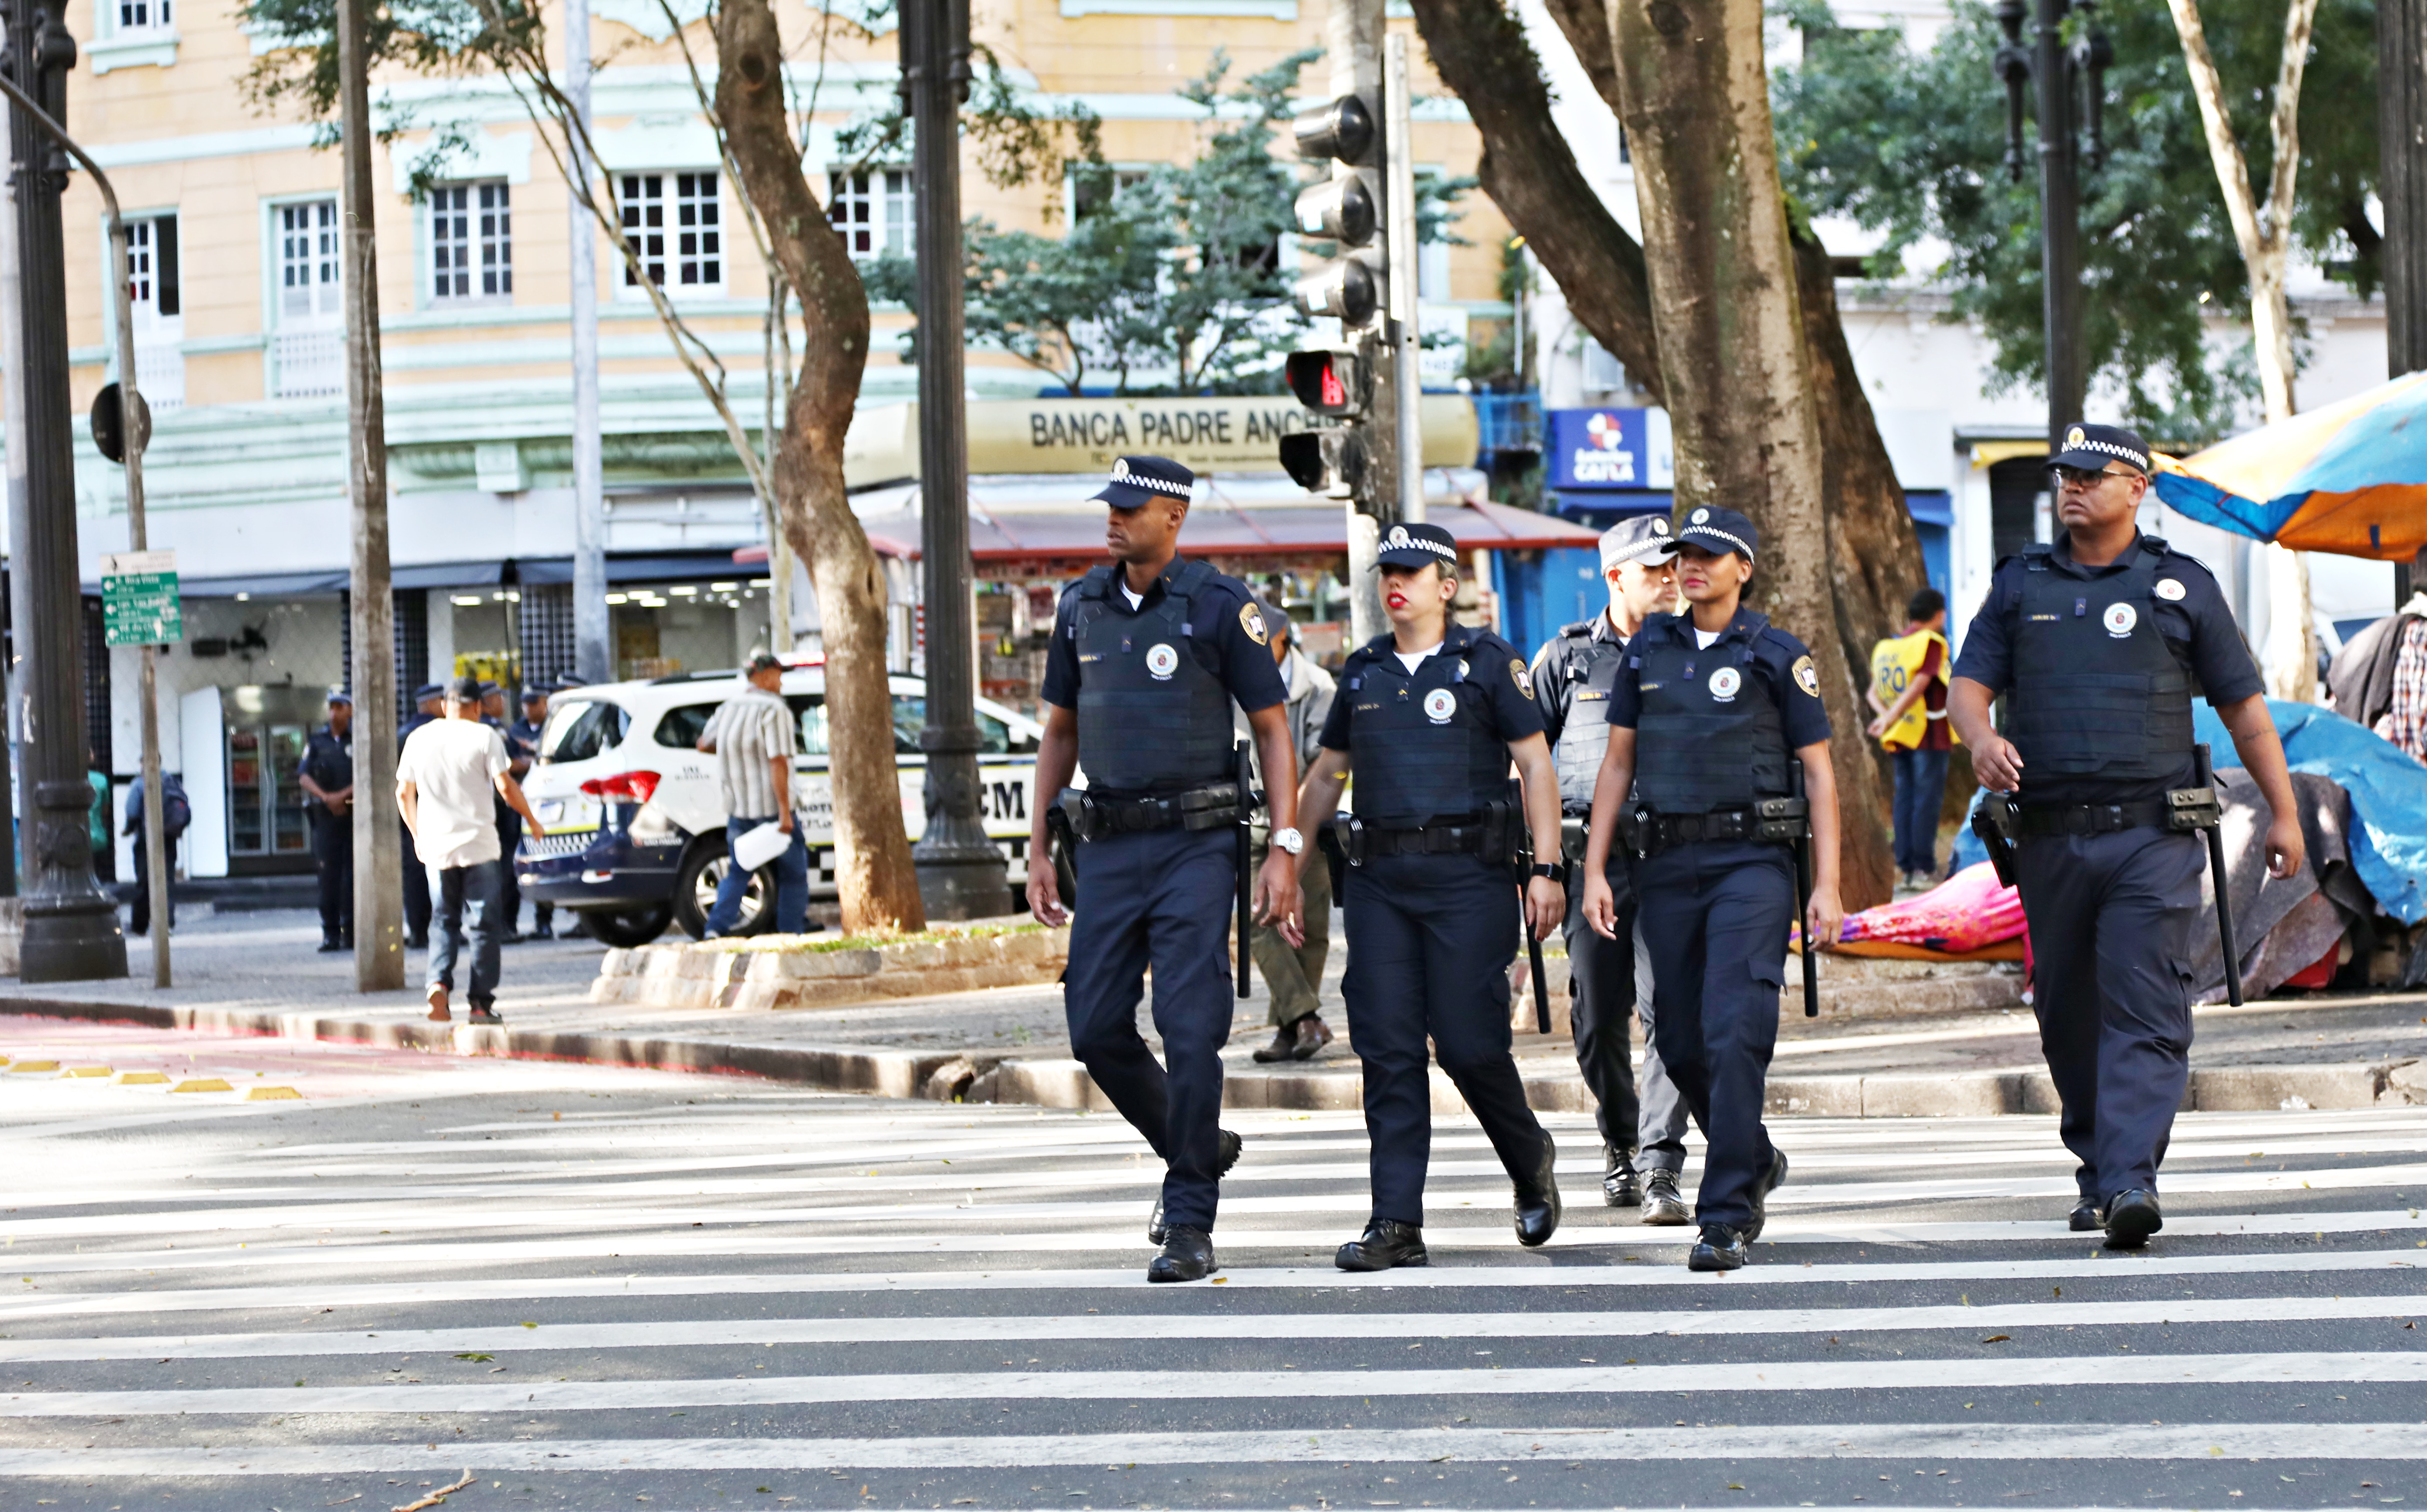 Guardas-civis andando no Centro de São Paulo